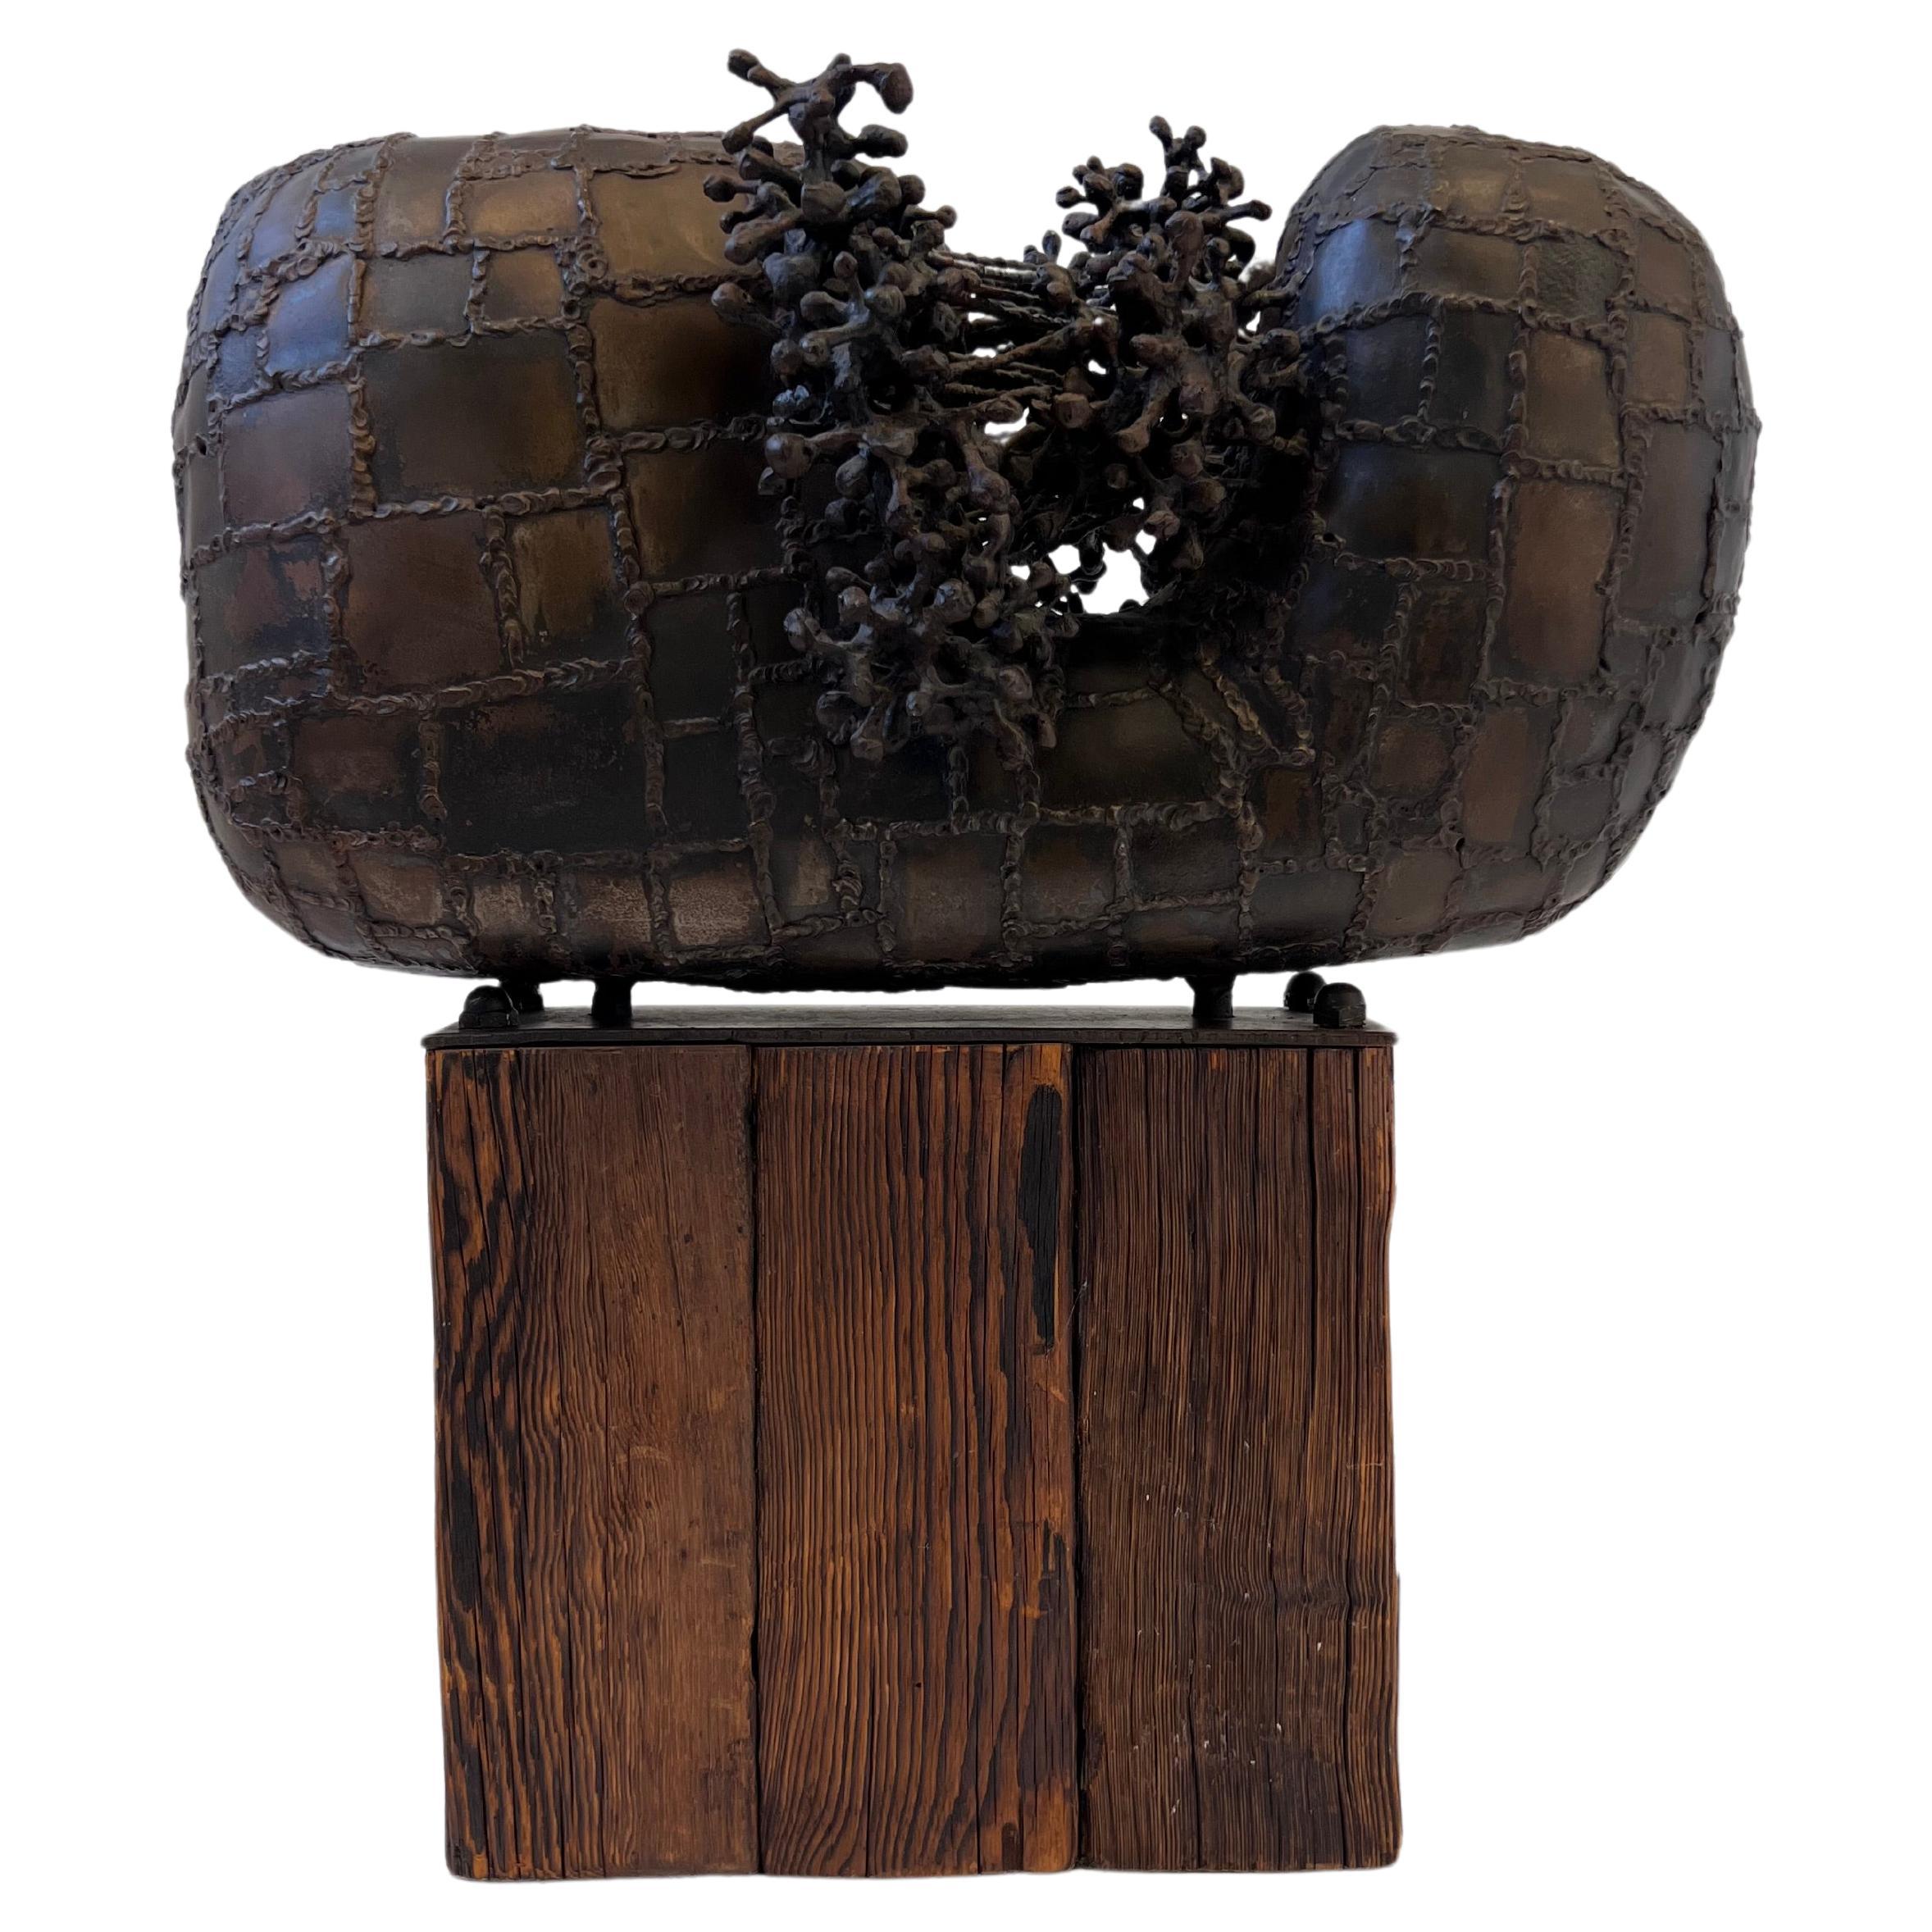 Sculpture abstraite brutaliste des années 1970 en acier soudé sur une base en bois. 

Dans l'état d'origine.
Mesures :
19